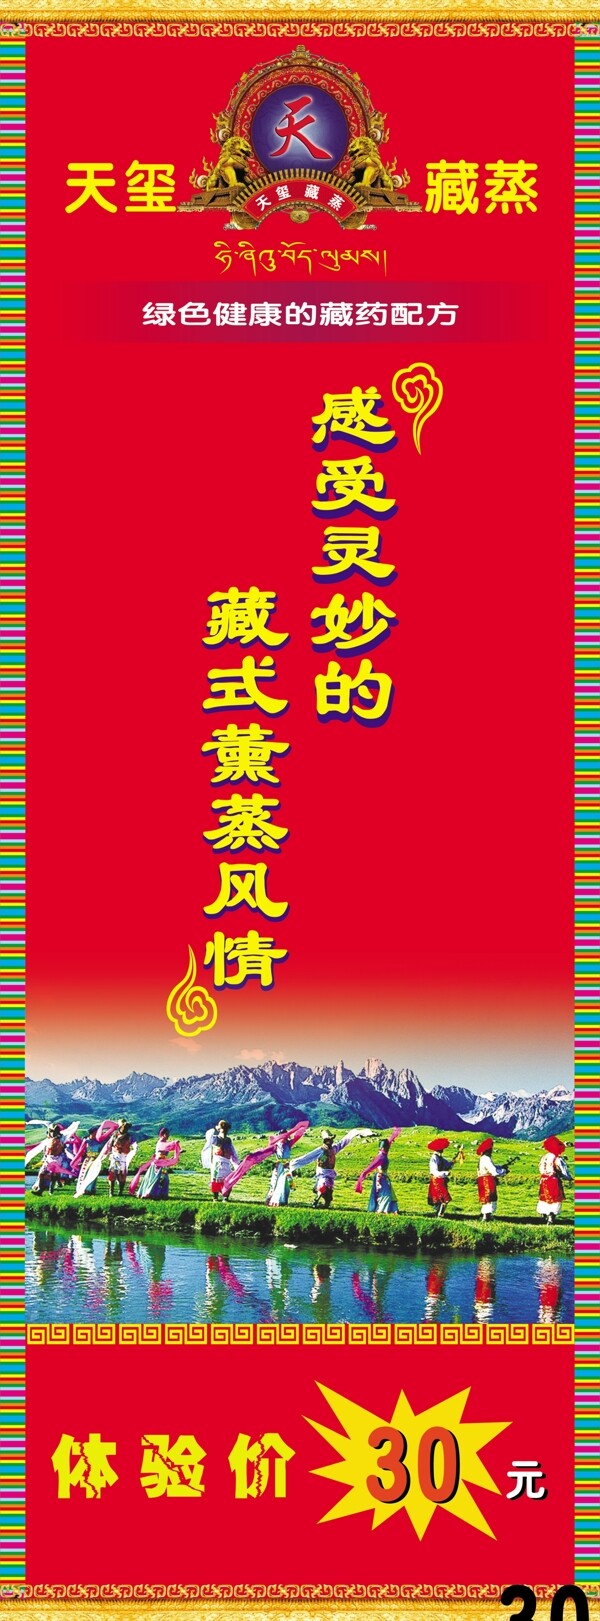 藏族文化图片